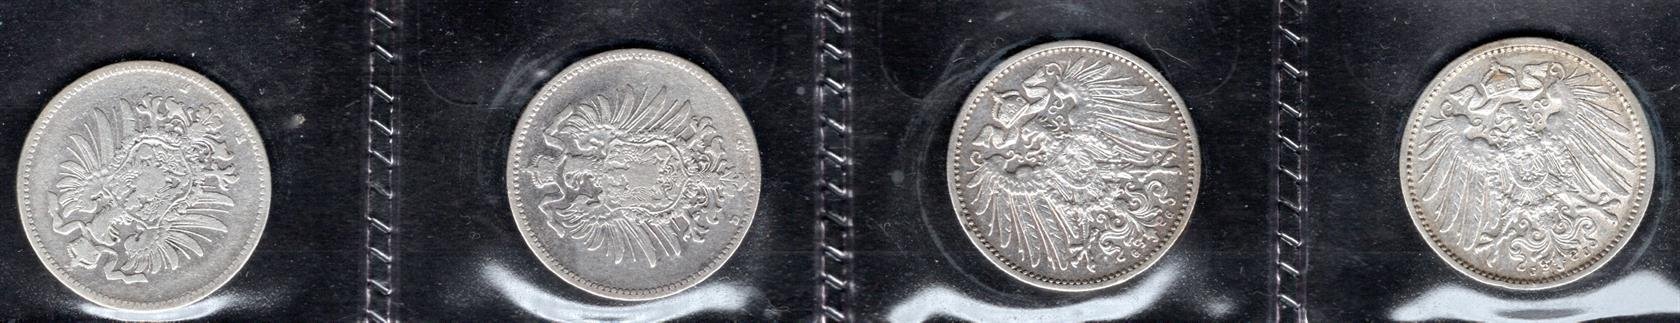 Německo, soubor mincí, zachovalost dle stavu, roky ex 1880 -1911